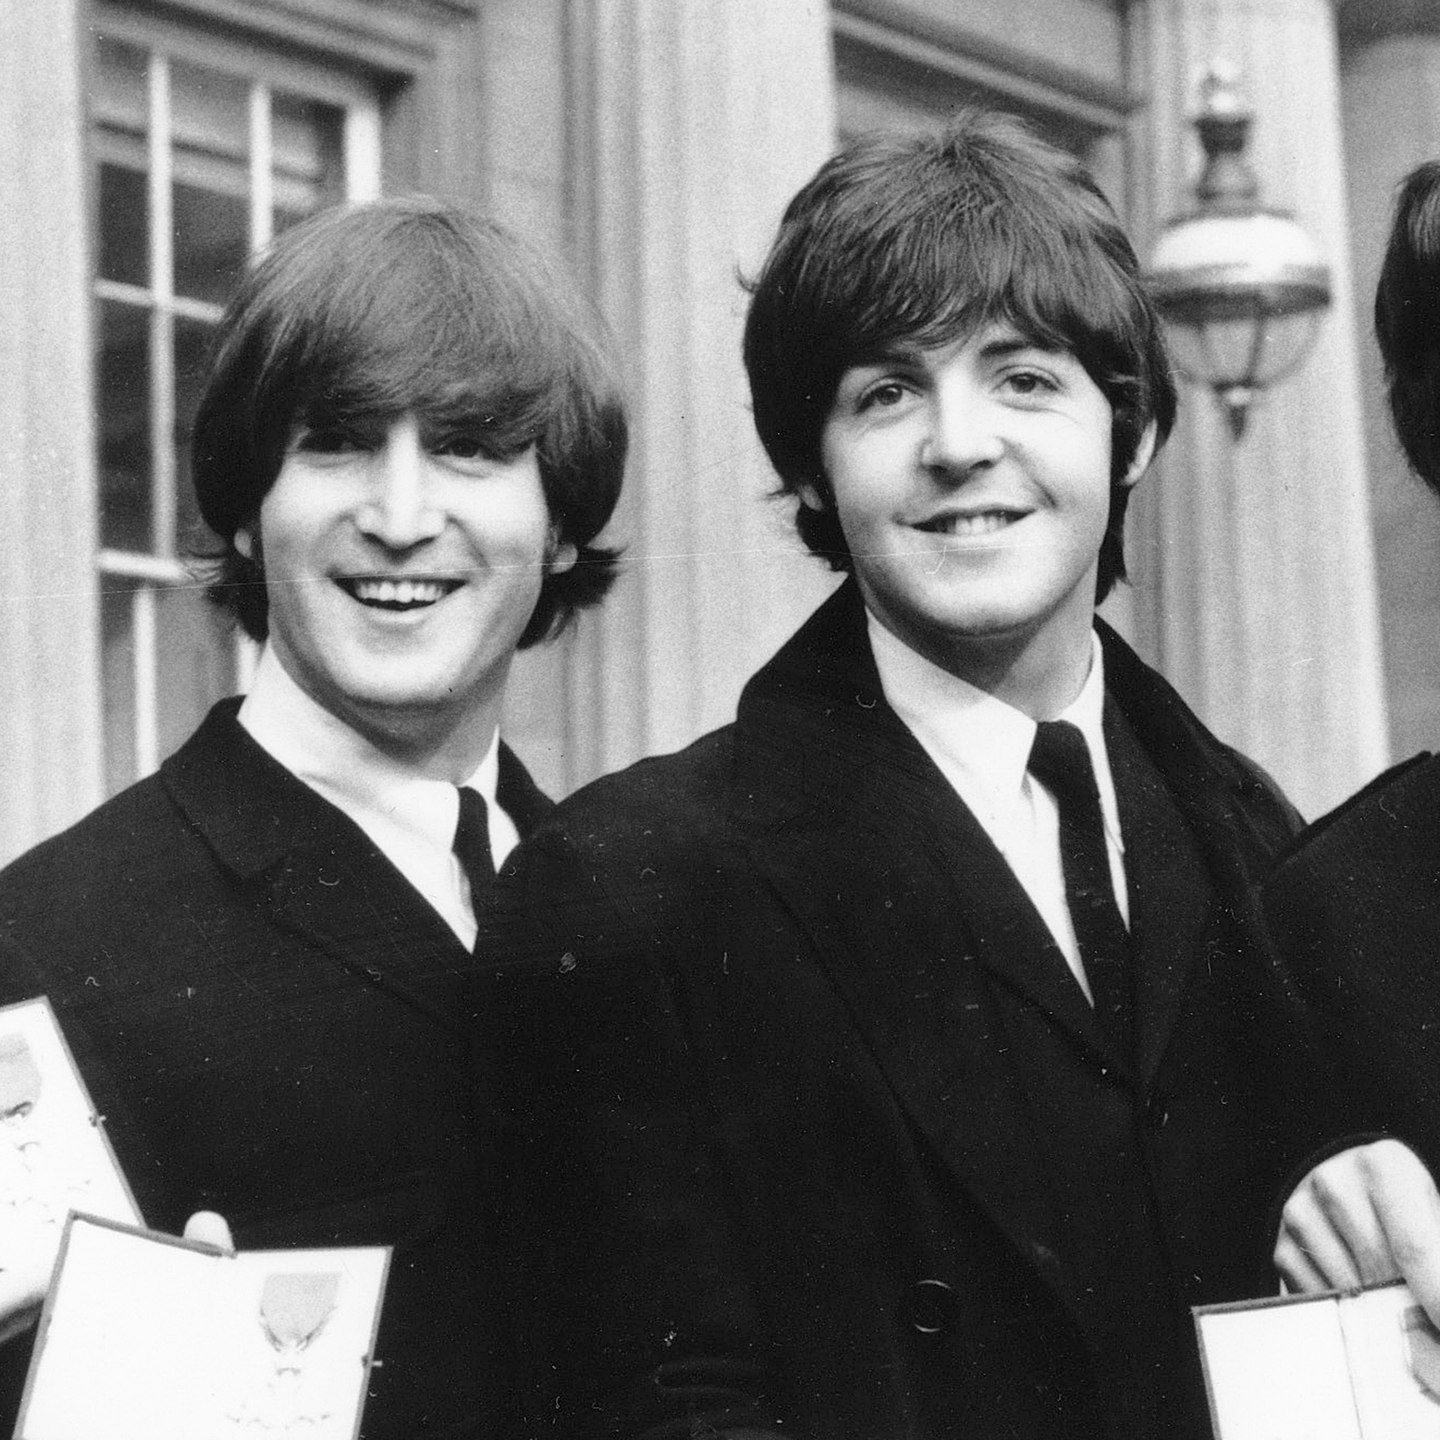 Ringo Starr, John Lennon, Paul McCartney og George Harrison smiler til kamera utenfor Buckingham Palace, England, 26. oktober 1965.